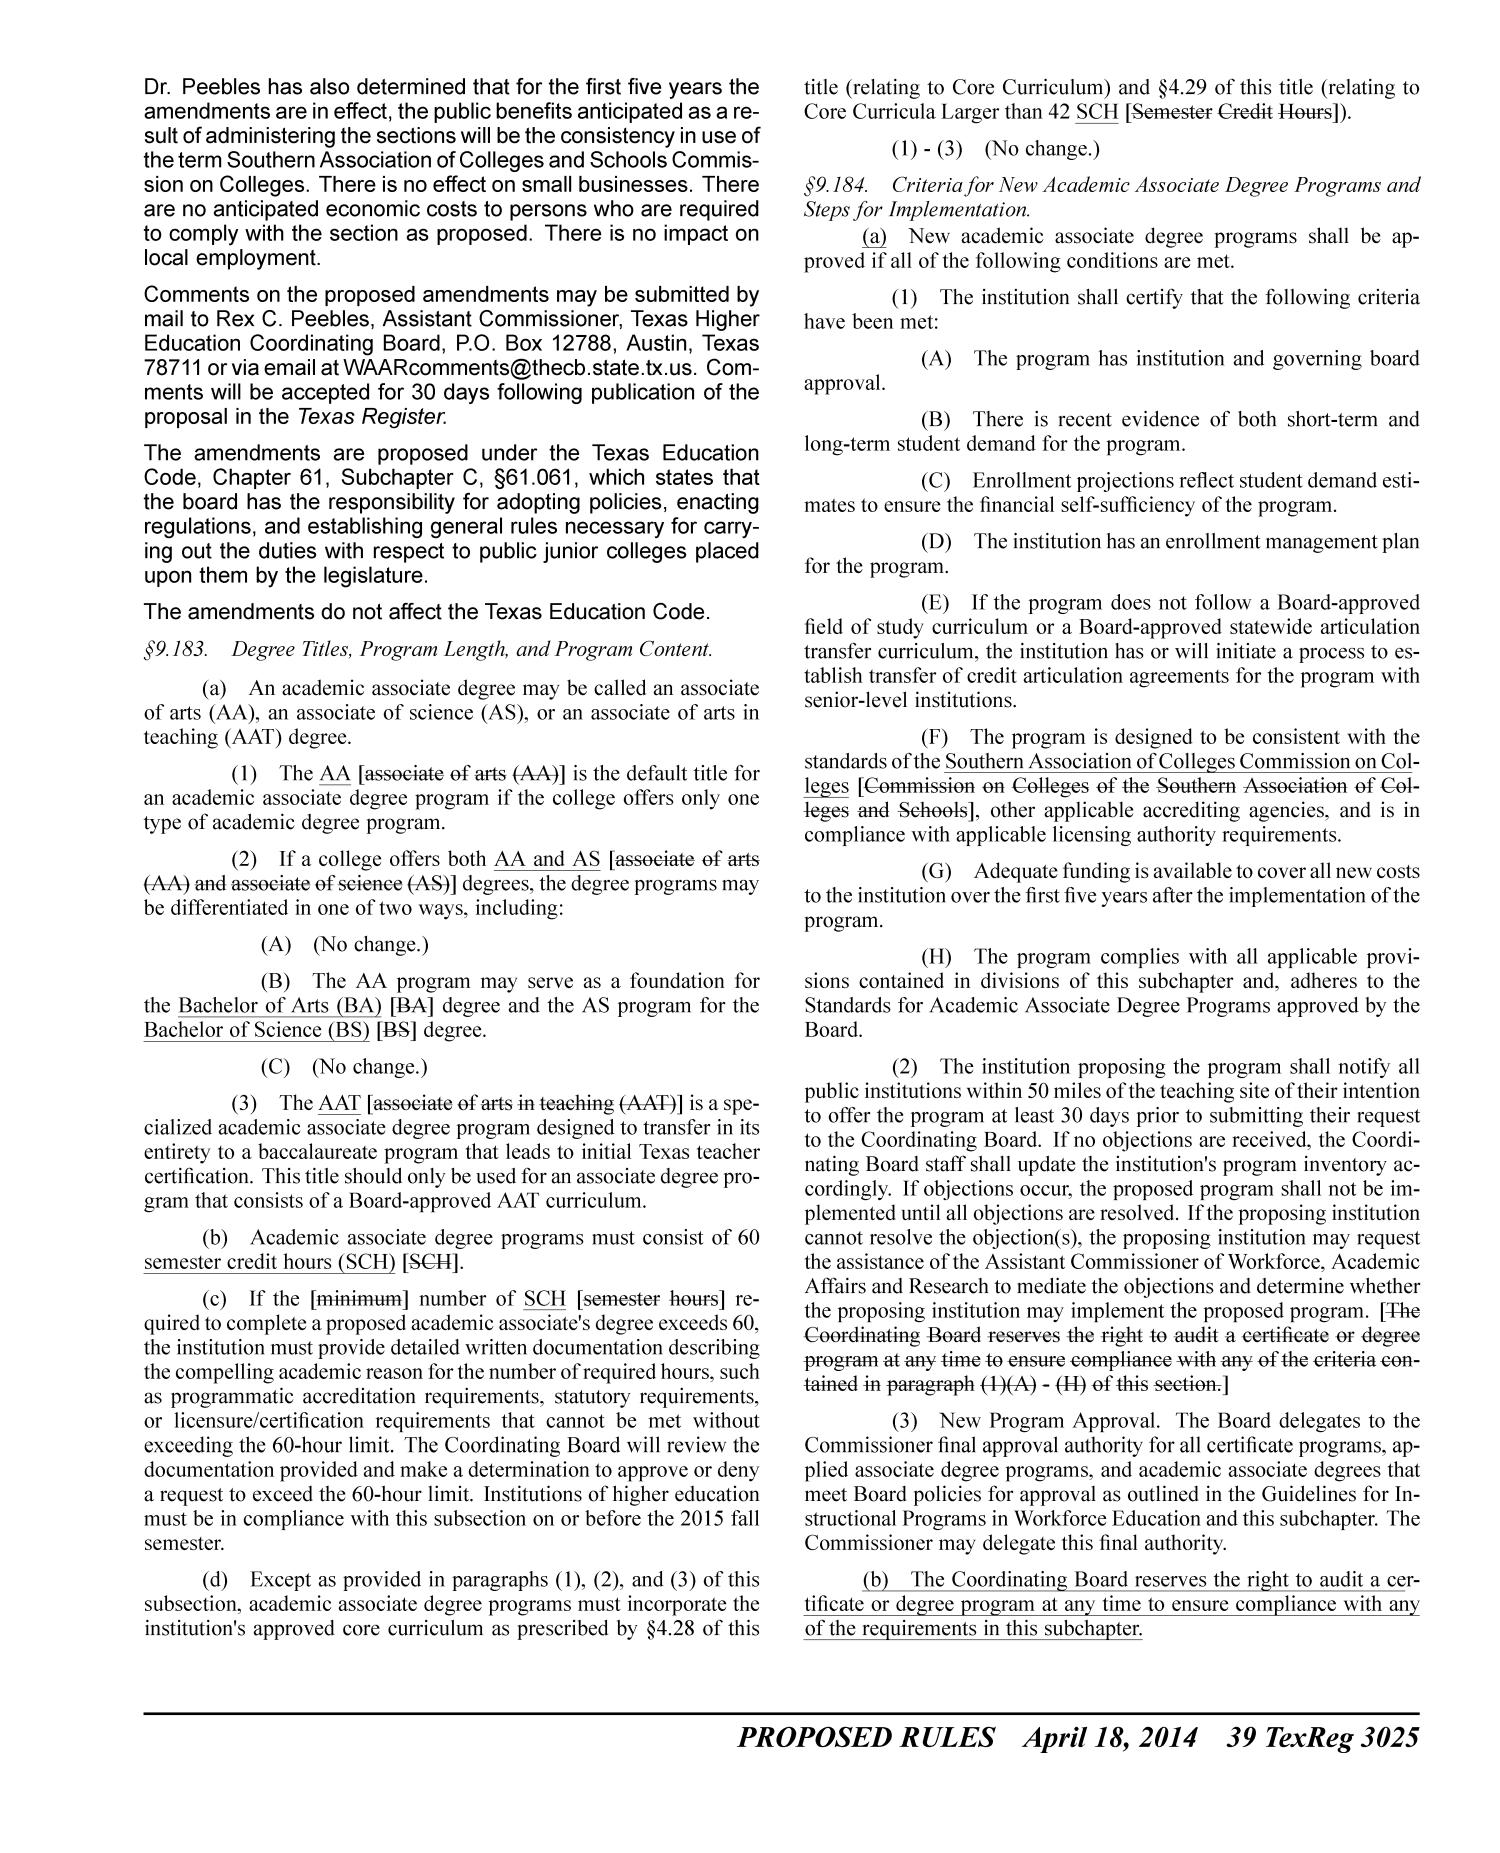 Texas Register, Volume 39, Number 16, Pages 3007-3290, April 18, 2014
                                                
                                                    3025
                                                